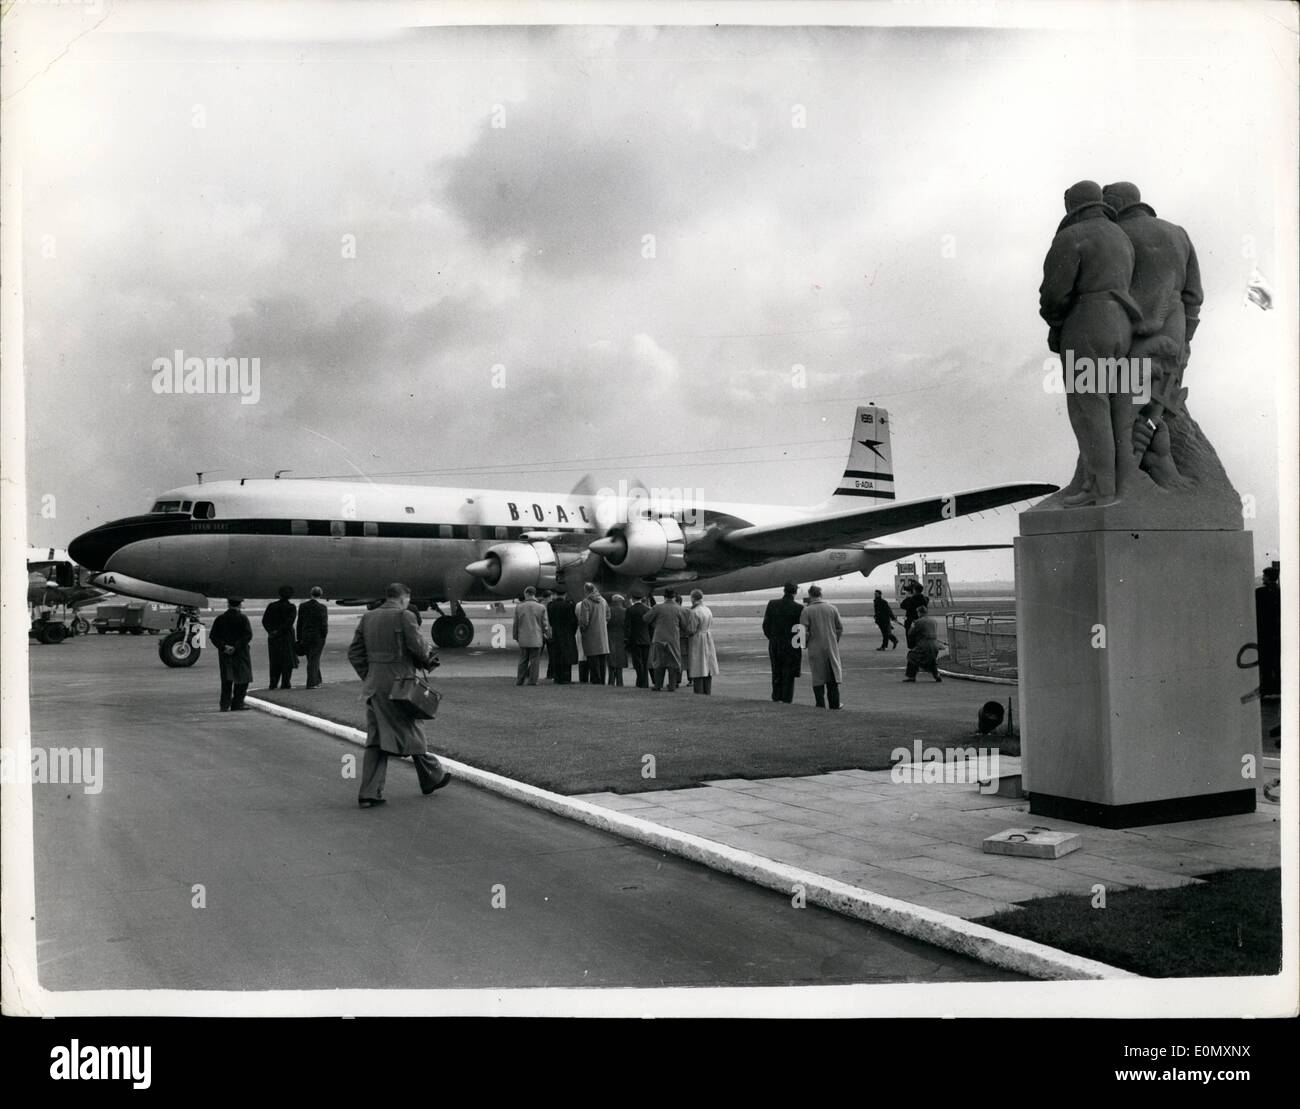 31. Oktober 1956 - kommt 31.10.56 B.O.A.C. erste Douglas D.C. 7 C-Verkehrsflugzeug. B.O.A.C. hat eine Bestellung 10 Douglas D.C. 7 C Flugzeuge für Dollar verdienen Nordatlantik-Dienste verwenden. Das erste Flugzeug der Flotte Unternehmen ist heute in London am Flughafen angekommen. Mit eine Reichweite von mehr als 5.000 Meilen werden dieses neue Flugzeug fliegen regelmäßig ohne Zwischenlandung in jeder Richtung zwischen London und New York. Keystone-Foto zeigt: Die Szene am Flughafen London heute nach der Ankunft des Flugzeugs D.C. 7-C. Stockfoto